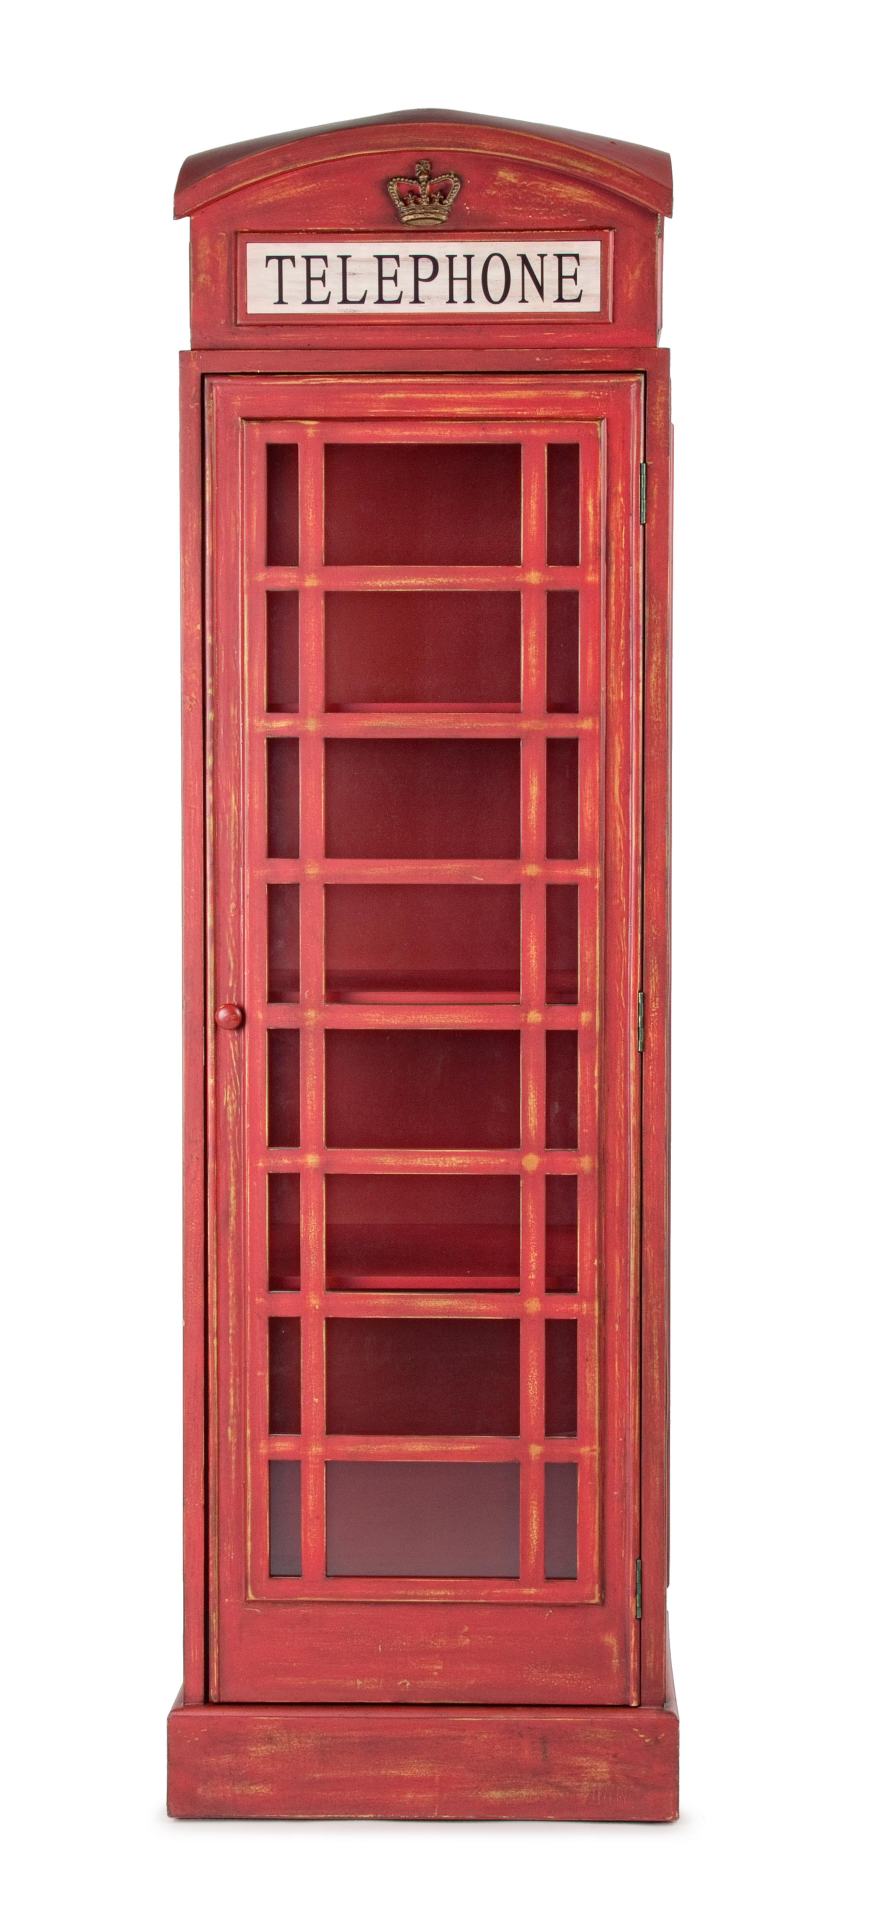 Das Regal Red Cabin überzeugt mit seinem klassischen Design. Gefertigt wurde es aus Tannenholz, welches einen roten Farbton besitzt. Das Gestell ist auch aus Tannenholz. Das Bücherregal verfügt über eine Tür und drei Böden. Die Breite beträgt 53 cm.